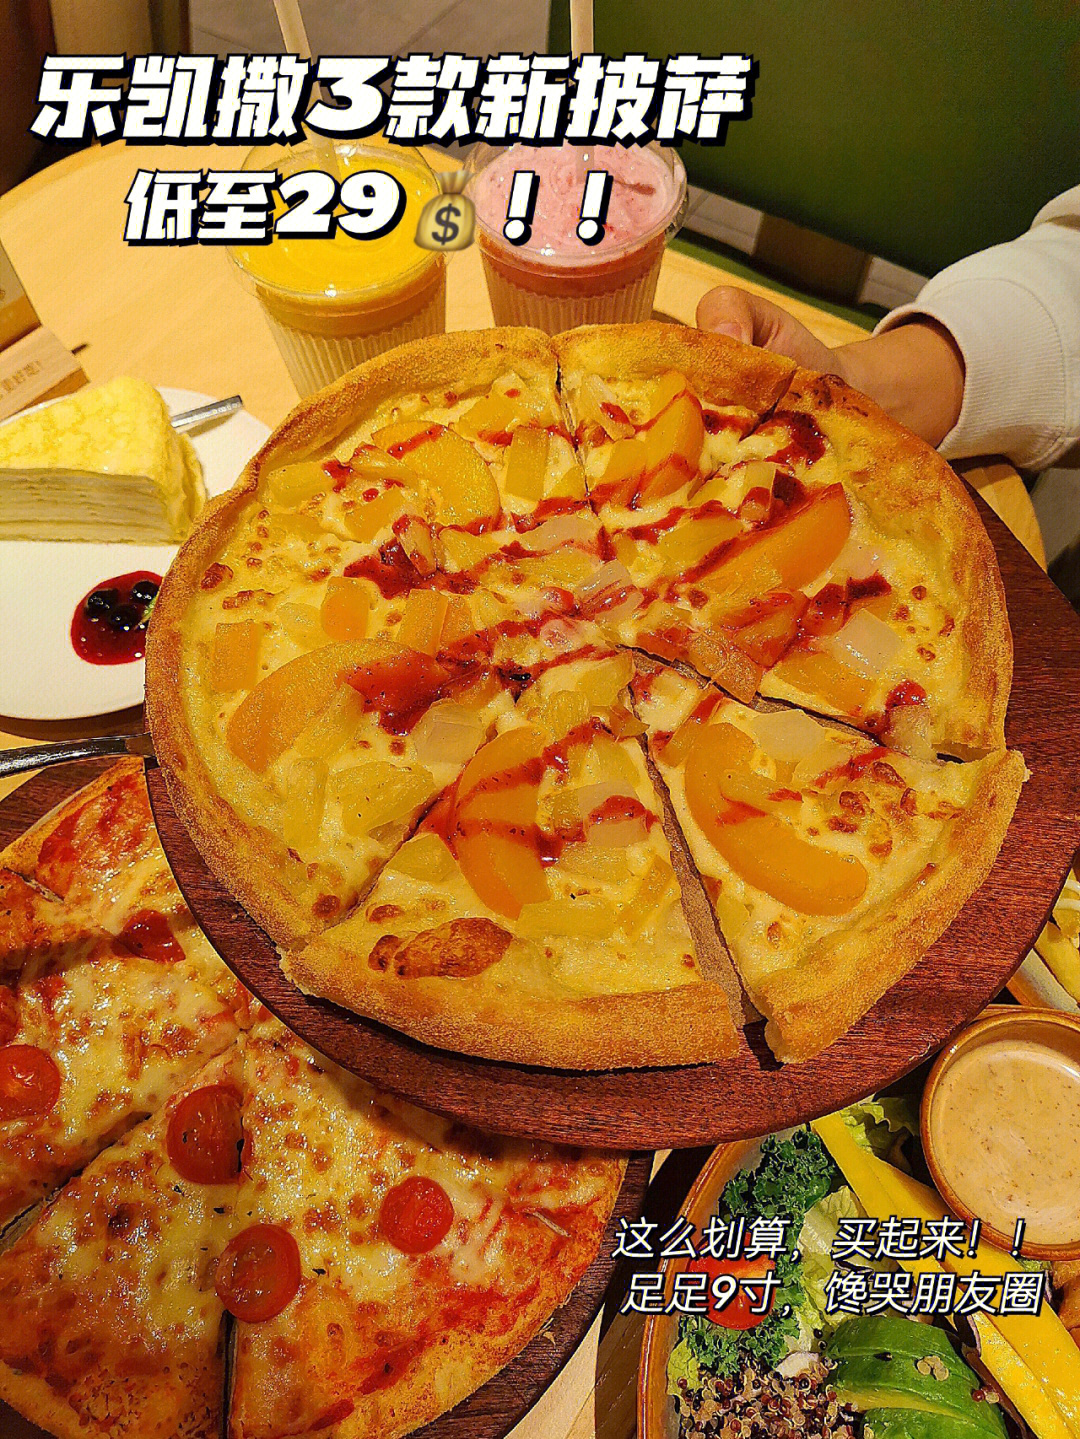 9寸披萨有多大实图图片